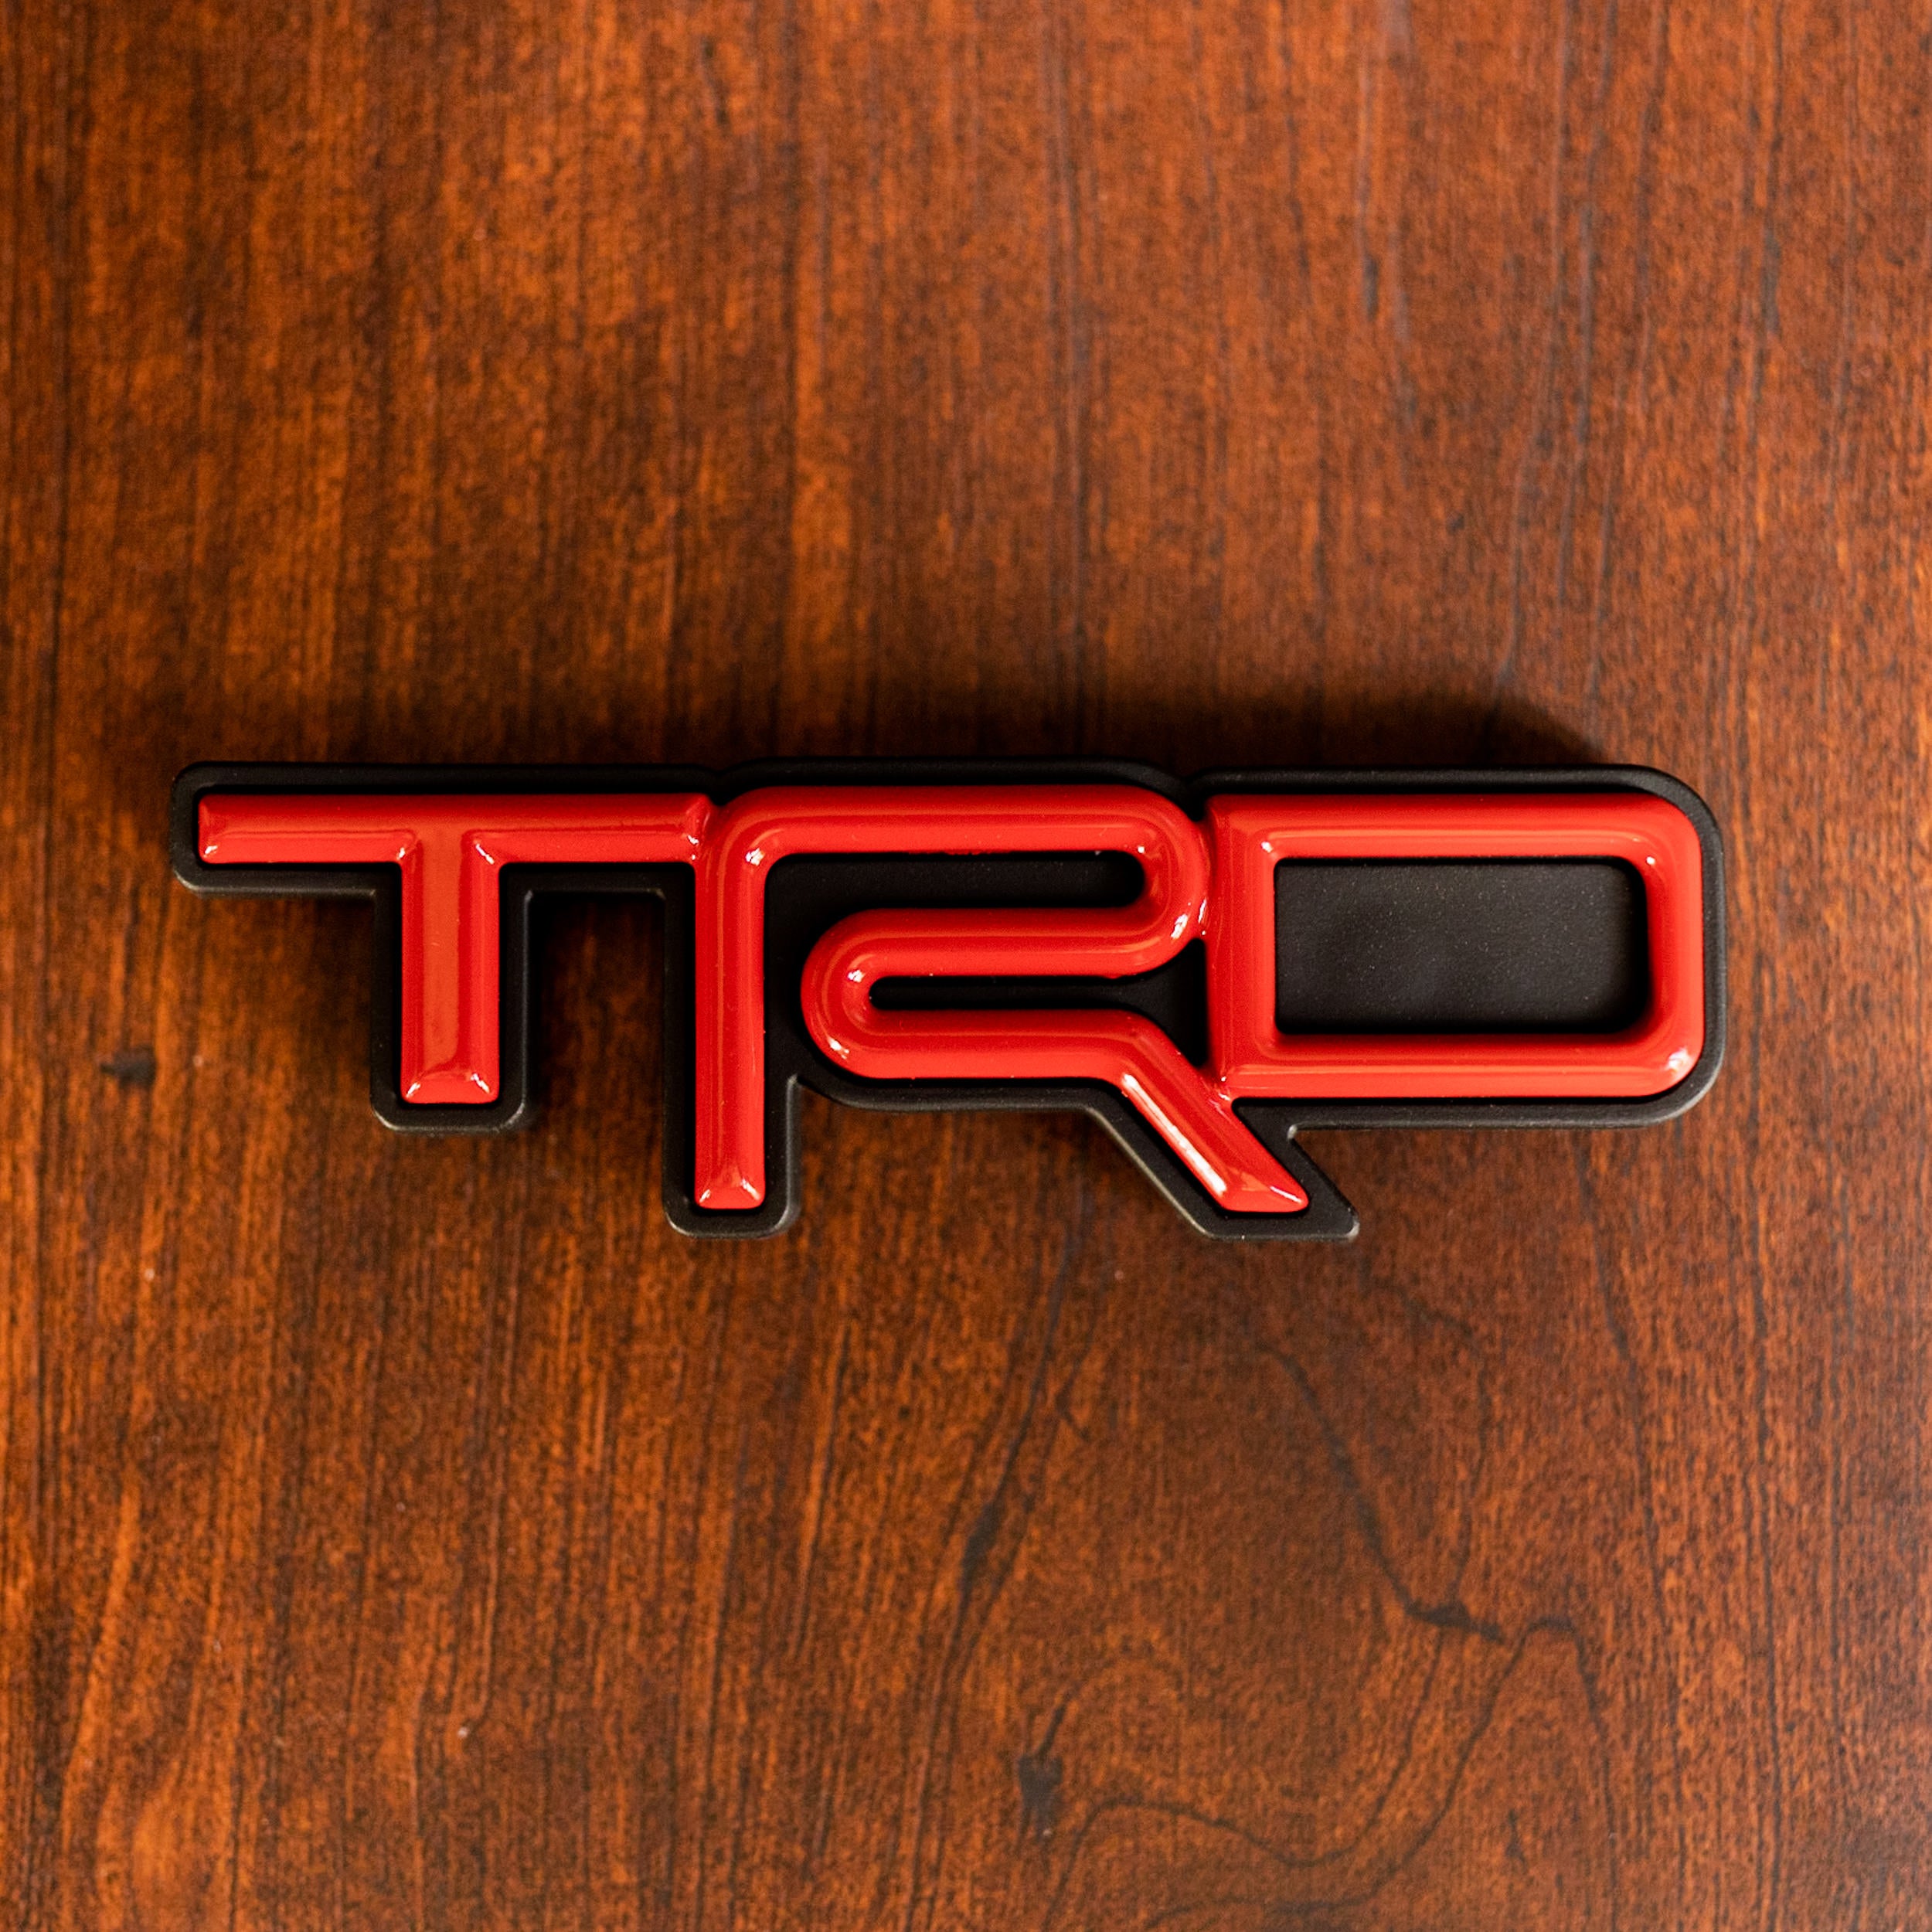 TRD auto vector logo - TRD auto logo vector free download